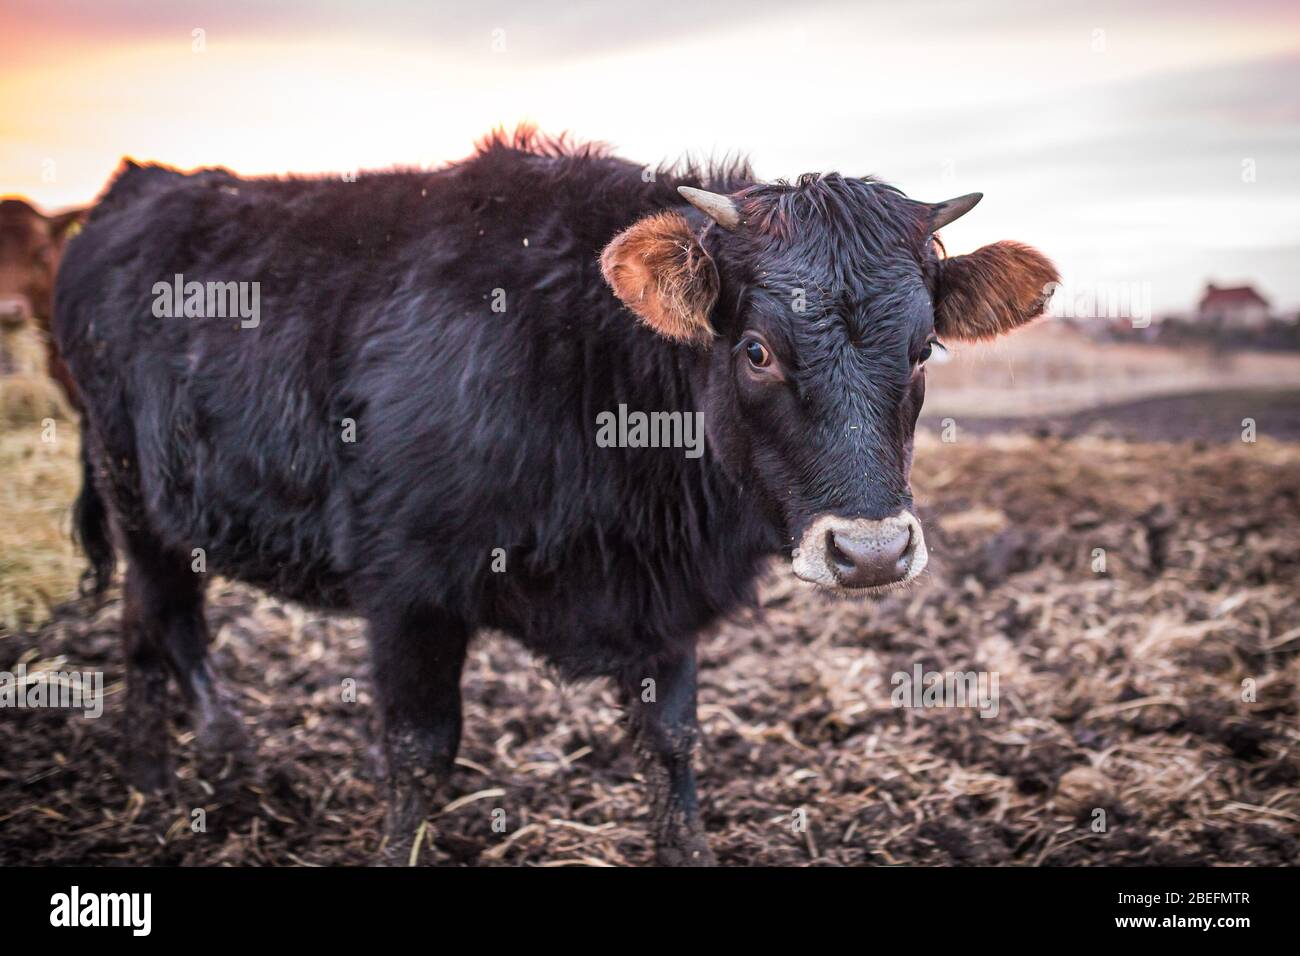 Fröhliche Kuh oder ein Stier auf einer schlammigen Wiese bei Sonnenuntergang im Winter. Nahaufnahme der schwarzen Kuh. Stockfoto